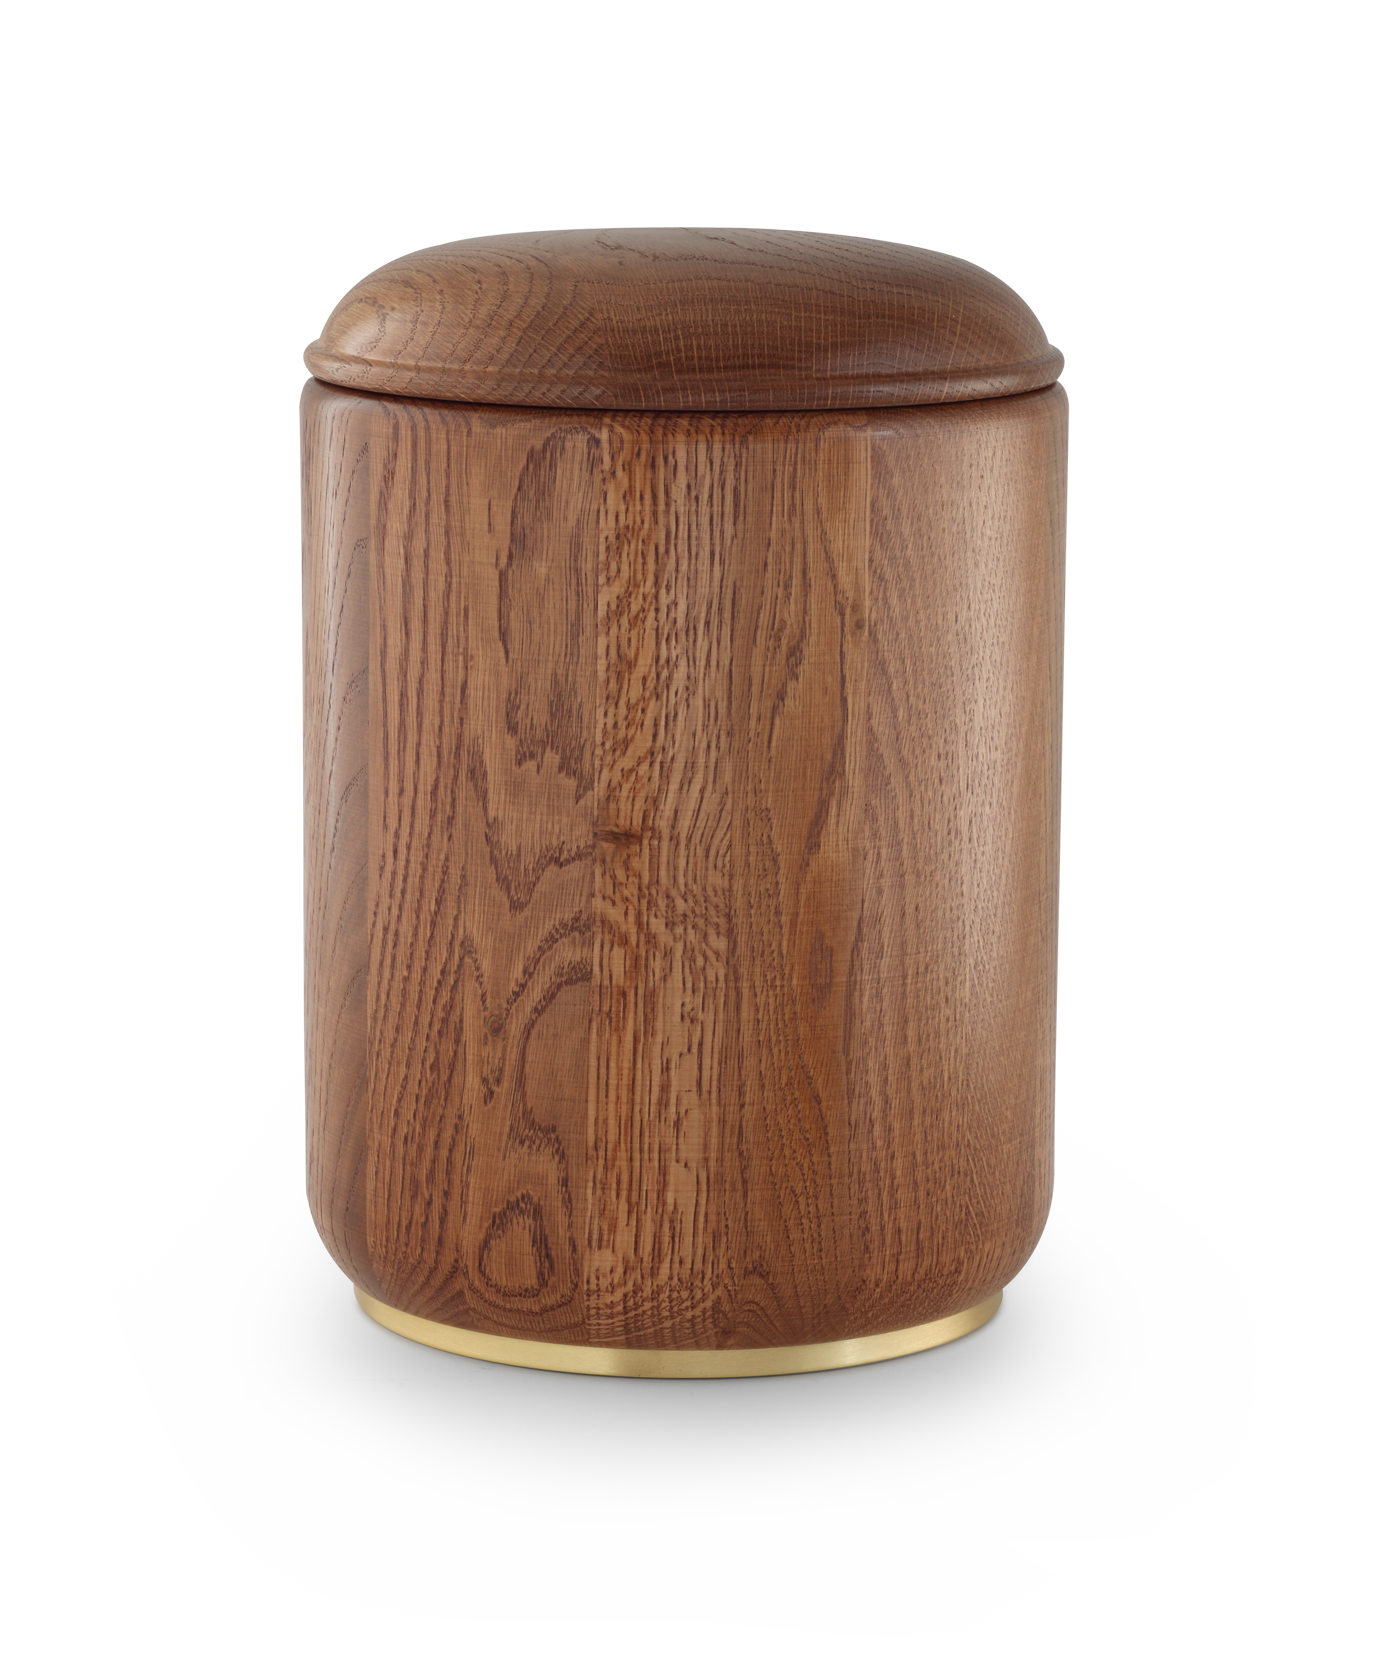 Völsing urn oak with wooden base - 0